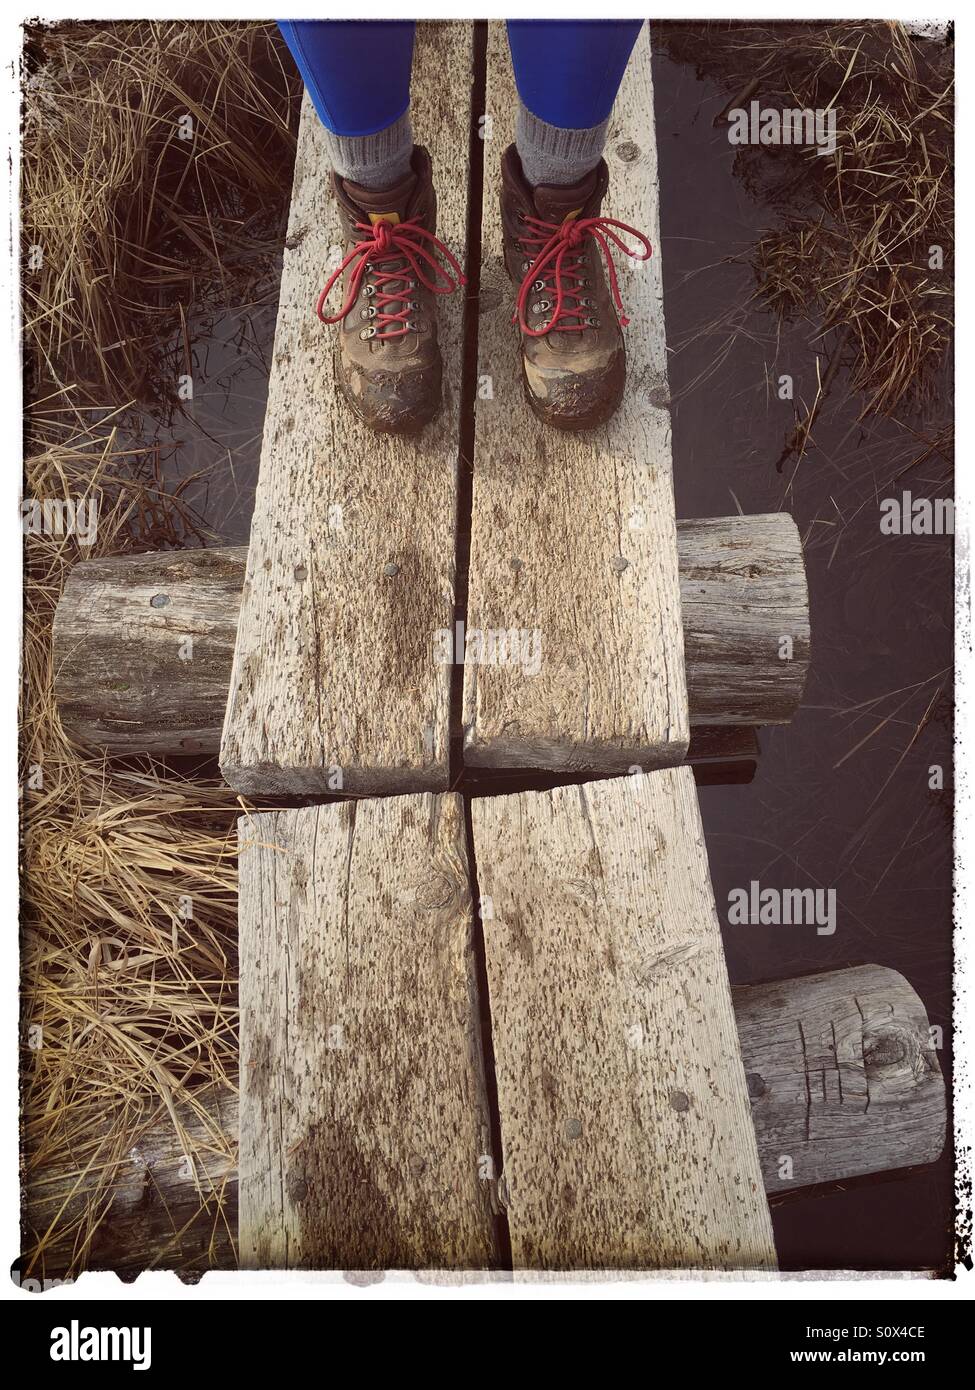 Chaussures de randonnée avec lacets rouges Photo Stock - Alamy